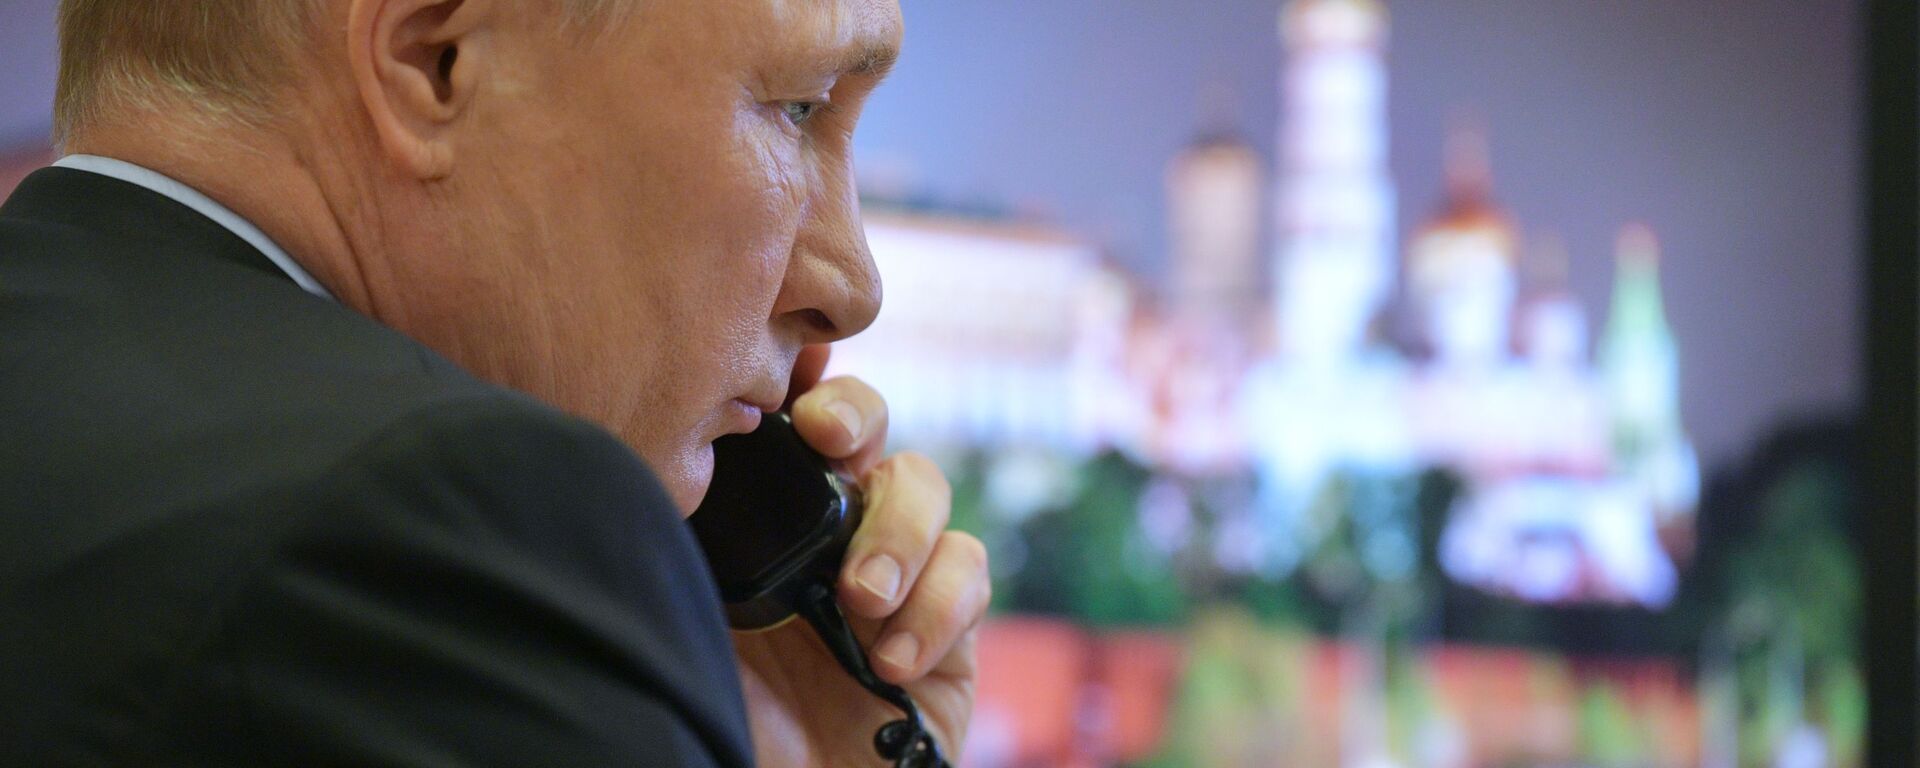  Президент России Владимир Путин во время разговора по телефону  - Sputnik Узбекистан, 1920, 25.10.2021